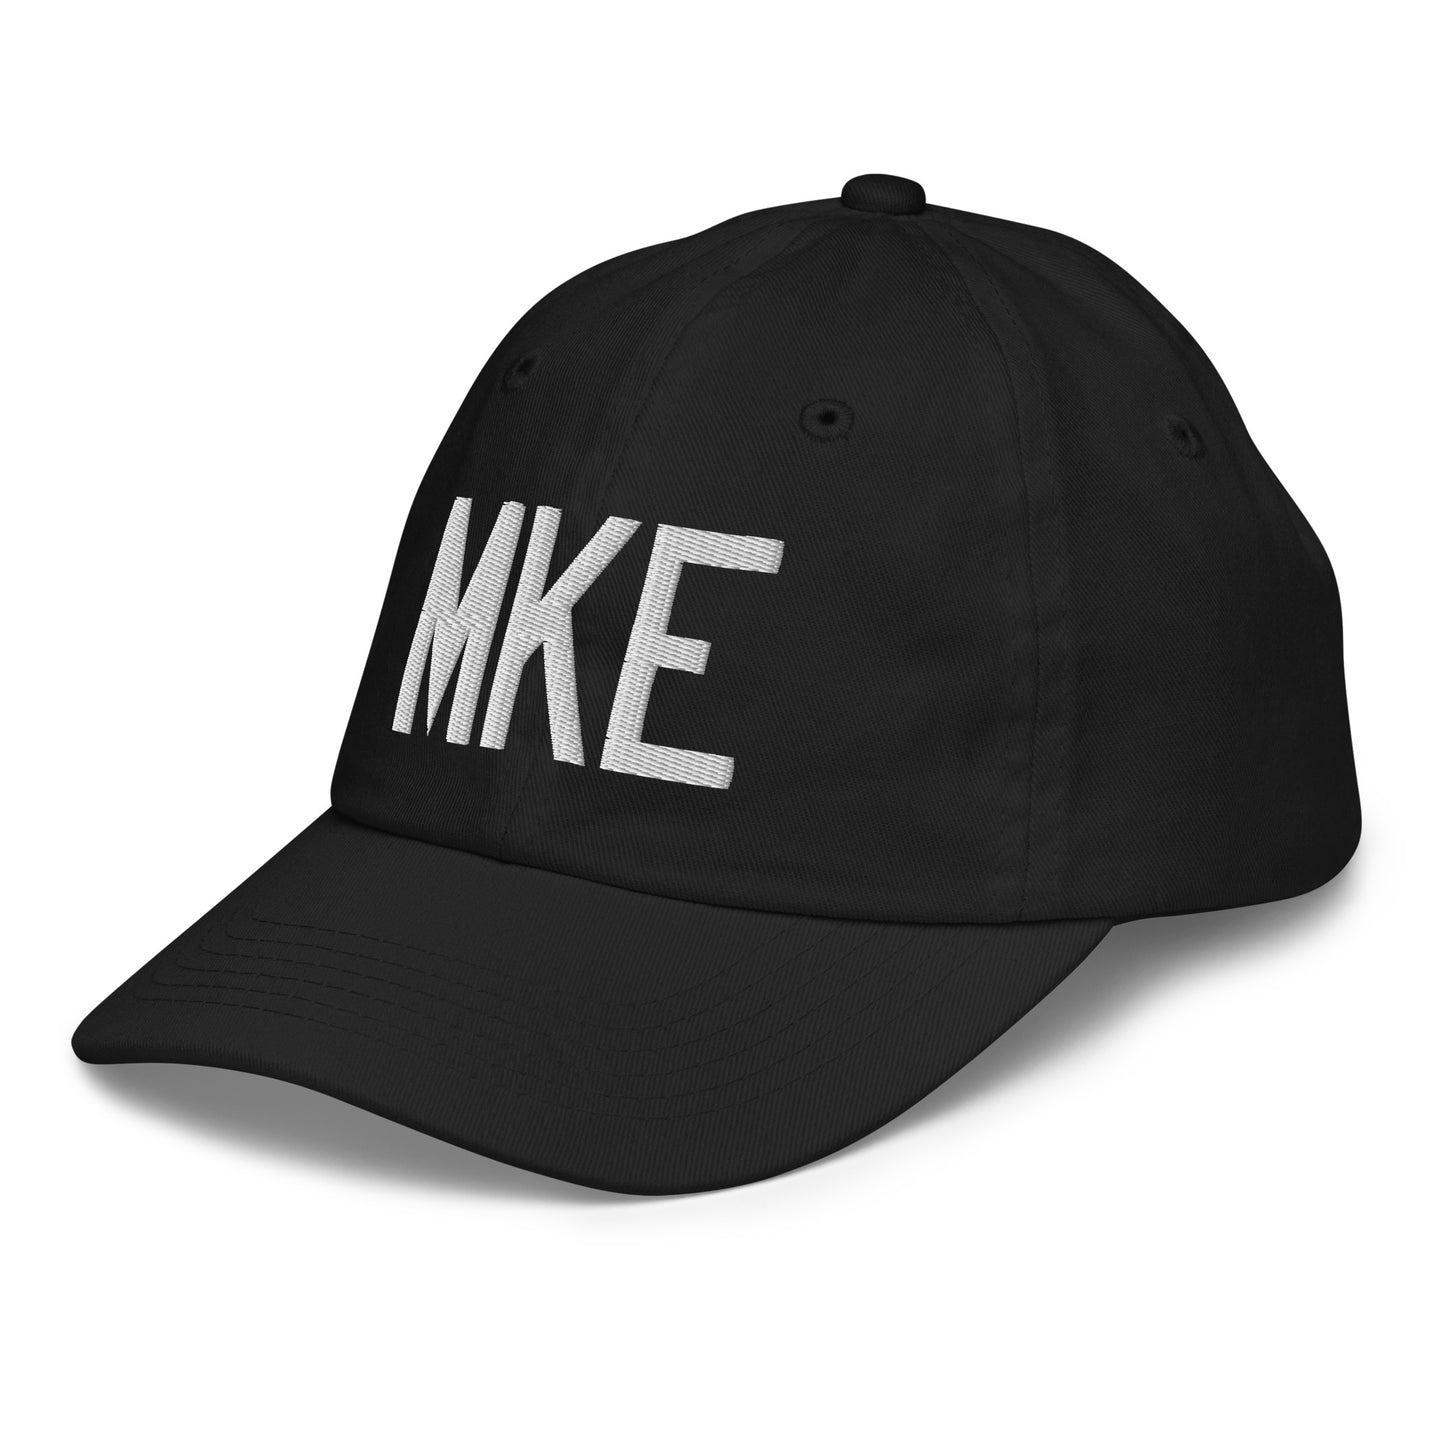 Airport Code Kid's Baseball Cap - White • MKE Milwaukee • YHM Designs - Image 13